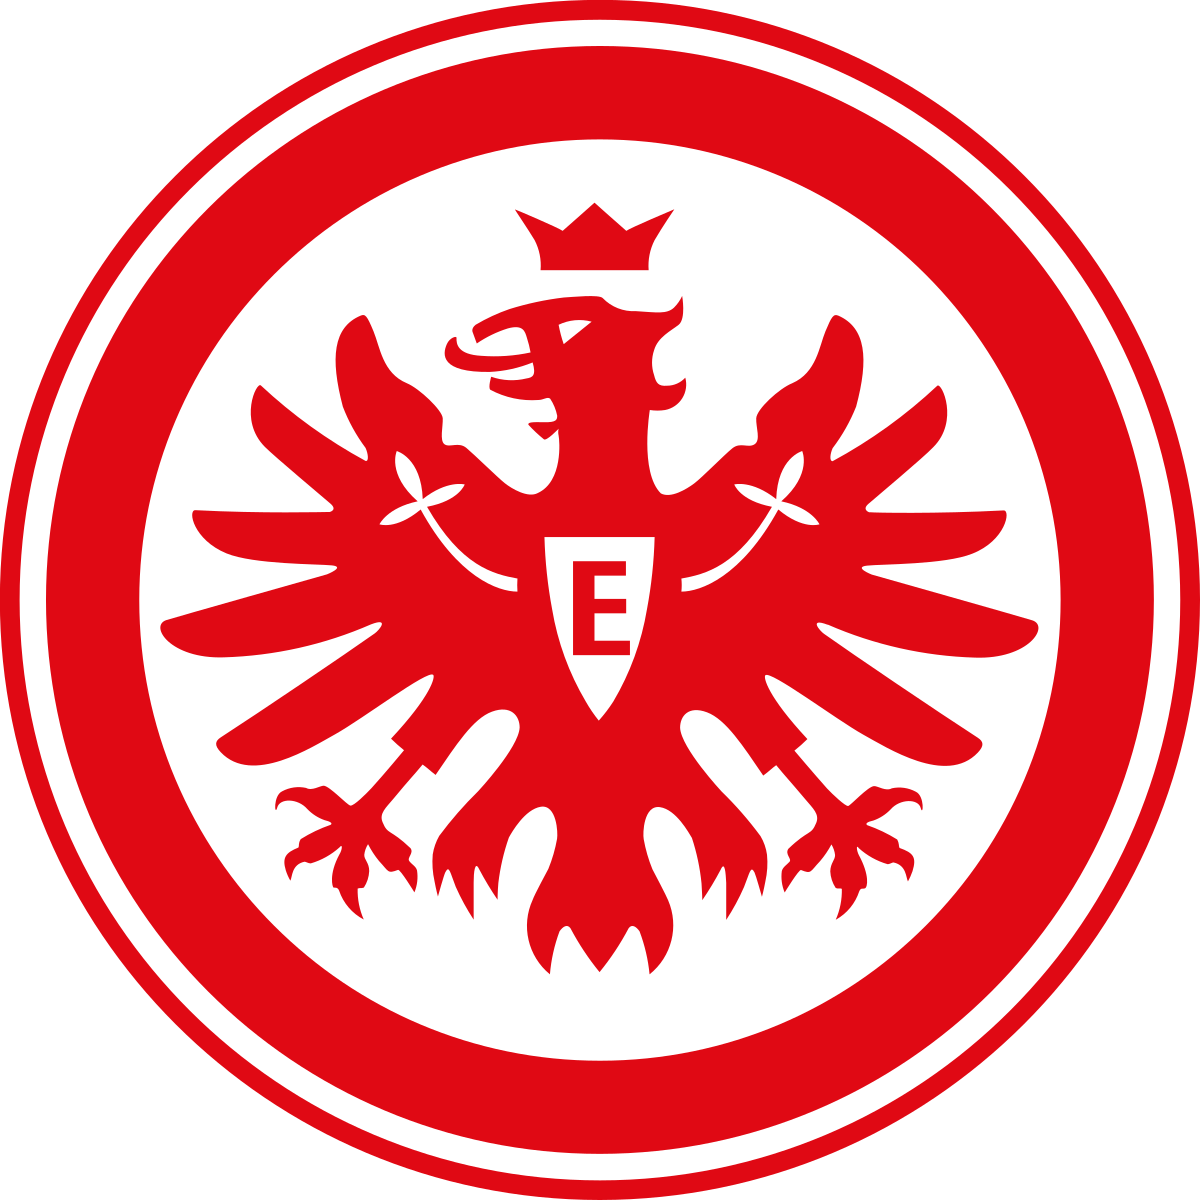 Wappen Eintracht Frankfurt 1899 diverse